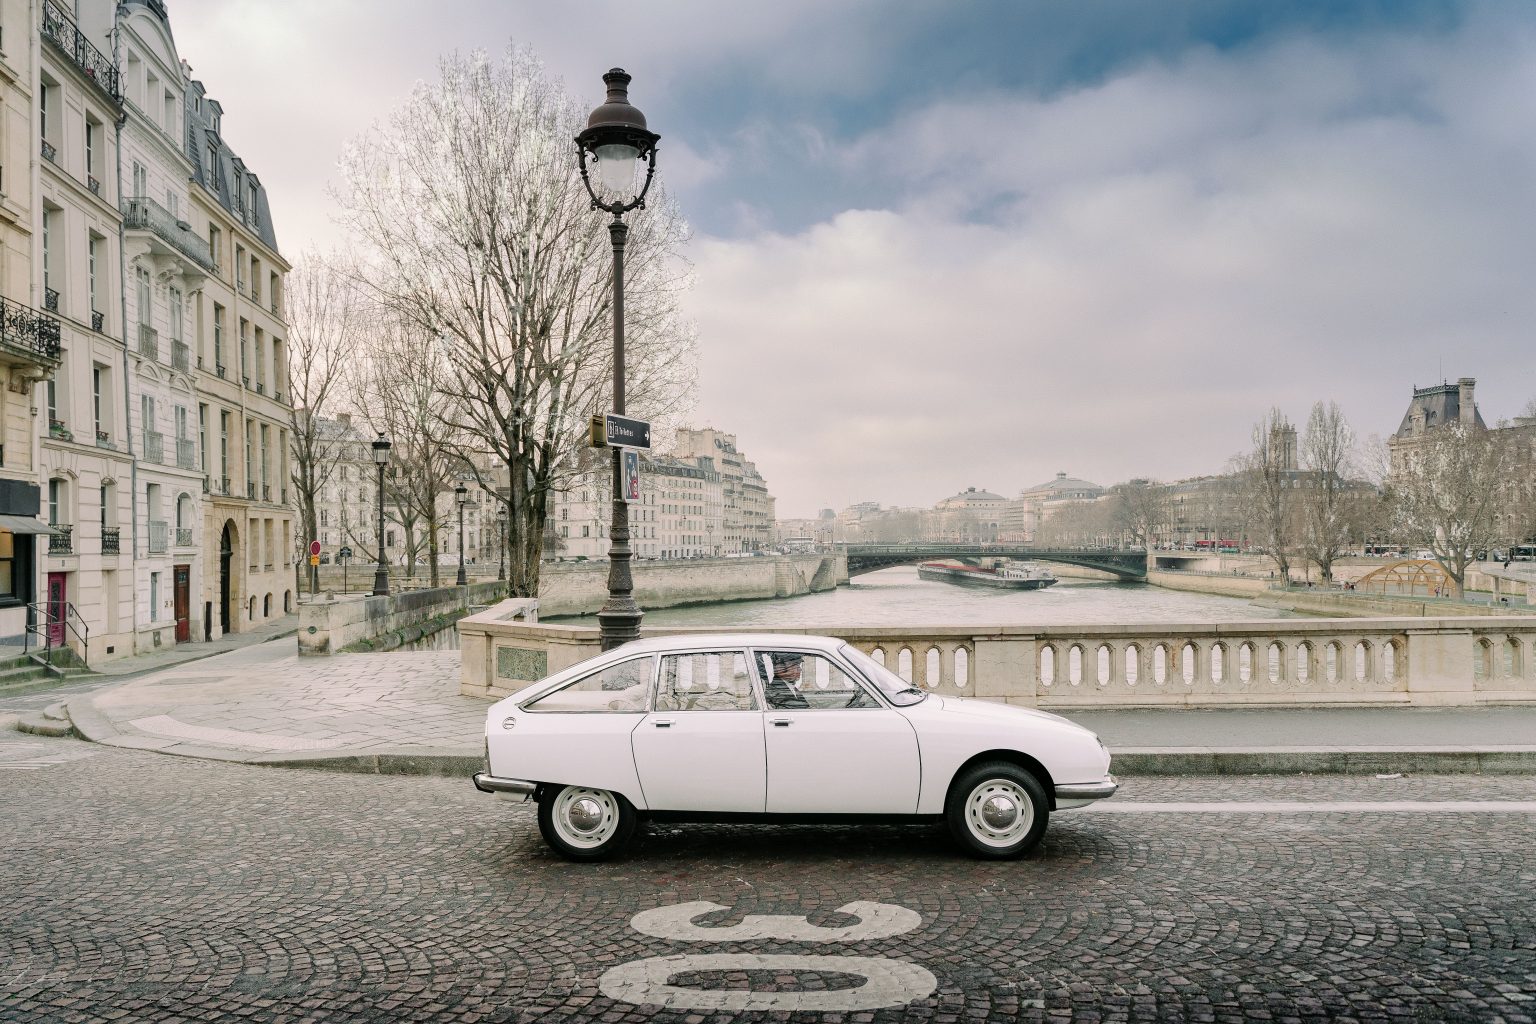 What I Really Want, 1970 Citroen GS, 50 Years Of the Citroen GS - Citroen GS Paris, Pont Louis Phillipe - Credit Photo Amaury Laparra